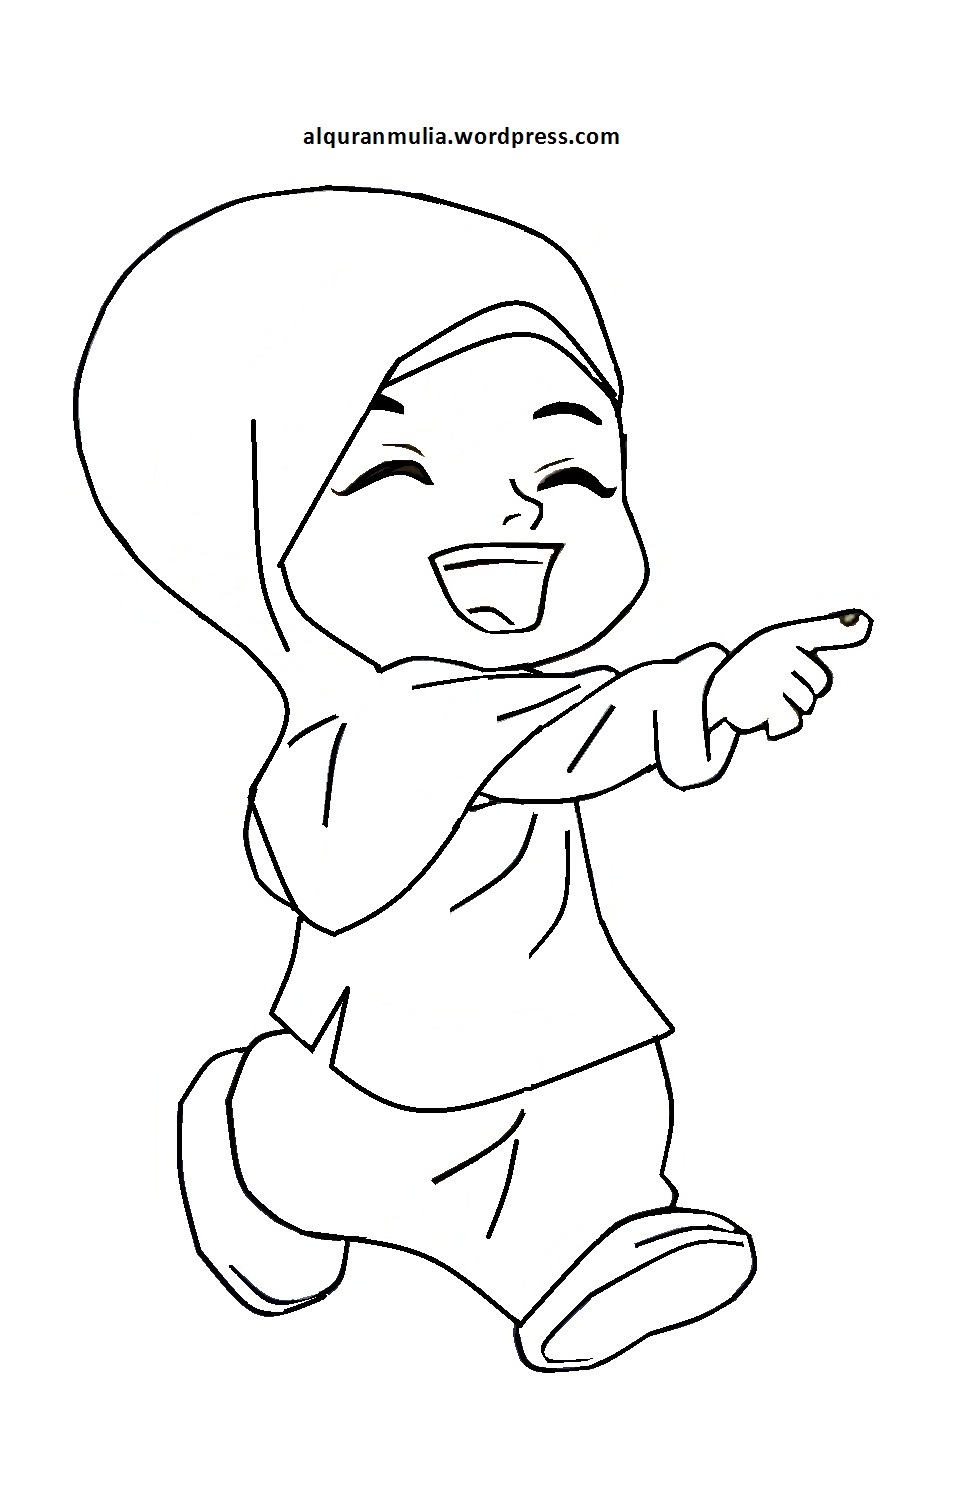 Mewarnai Gambar Kartun Anak Muslimah 54 Alquranmulia